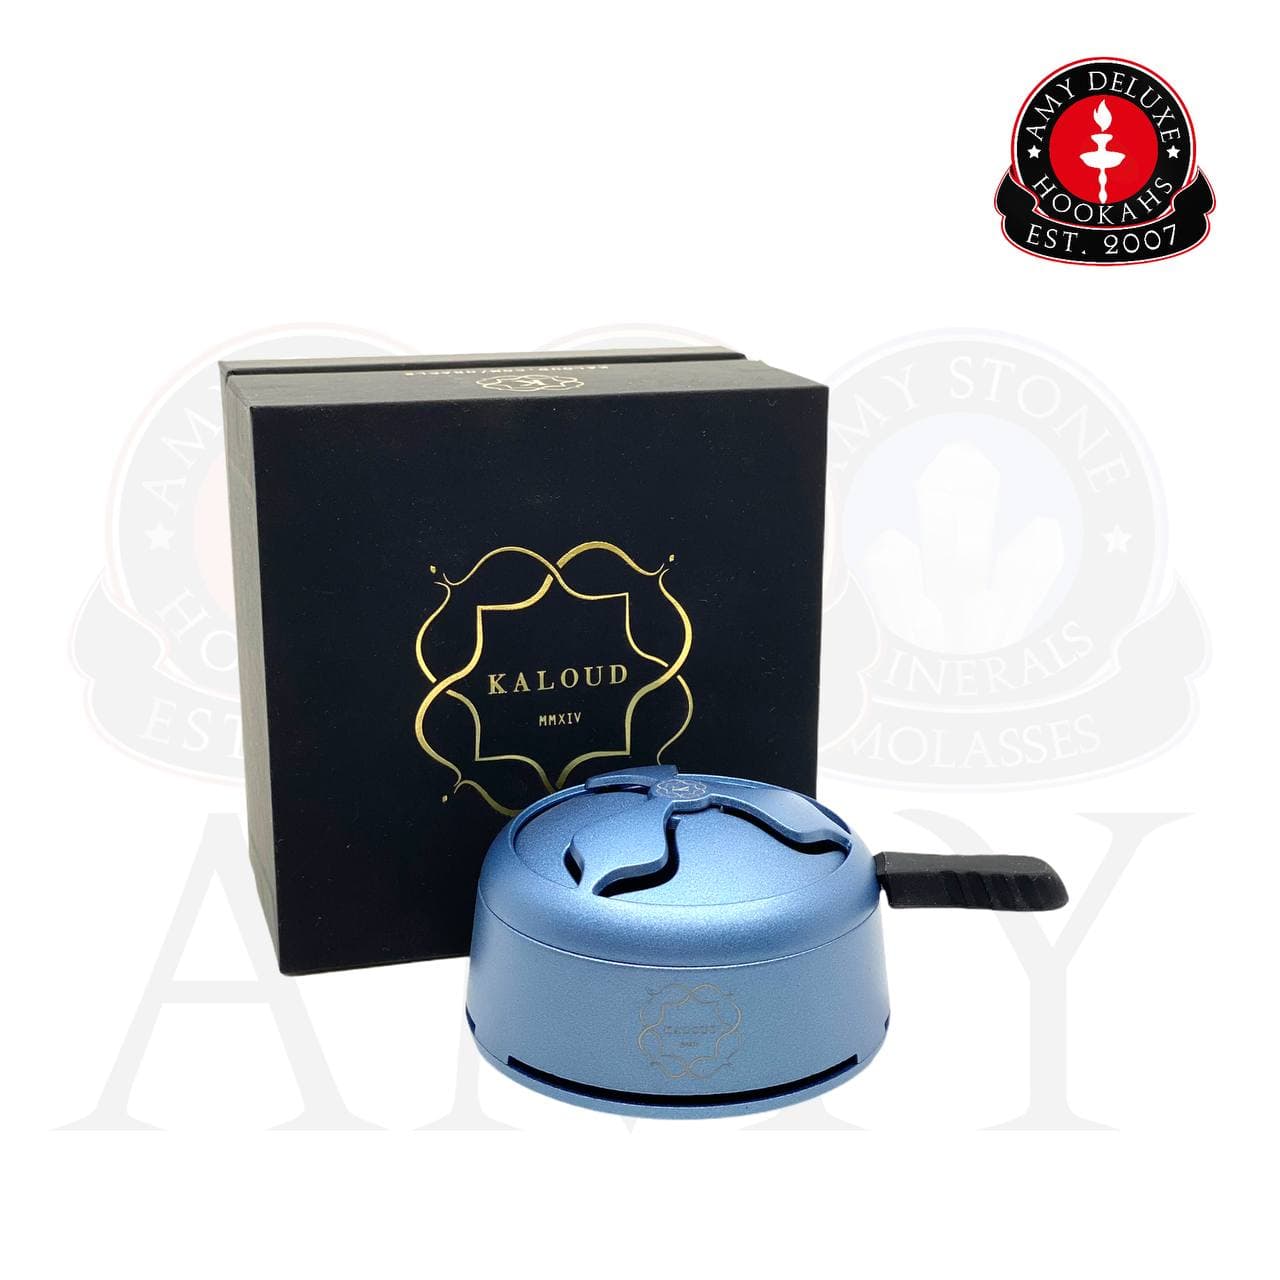 Kaloud Lotus 1+ Heat Management Device - Amy Shop - Amy Shop - Varmeregulator til vandpibe i blå farve med mat finish